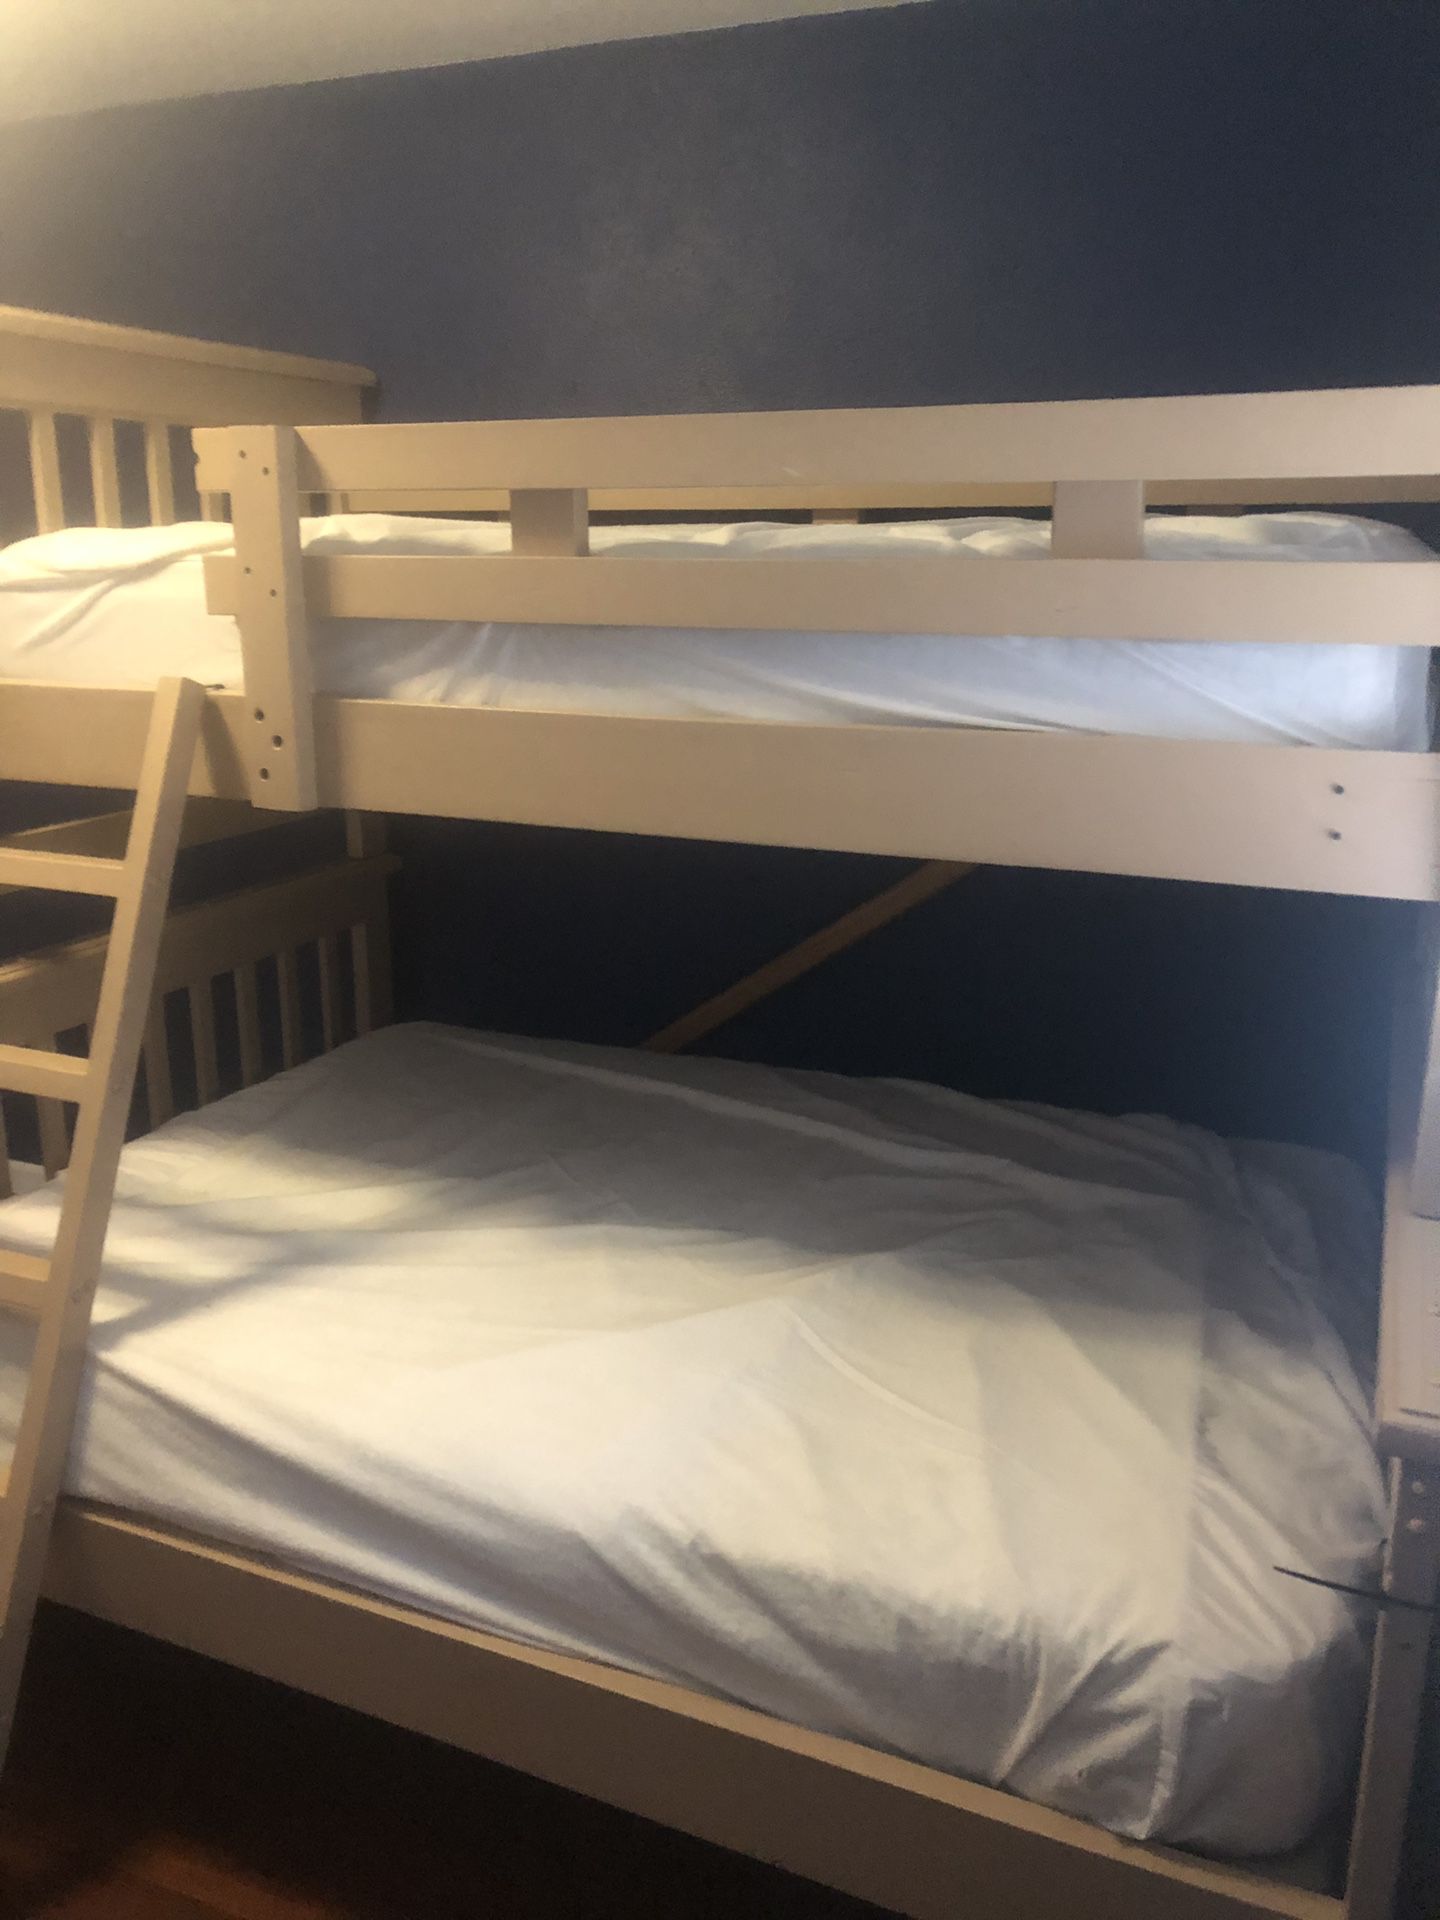 Children’s bunk bed